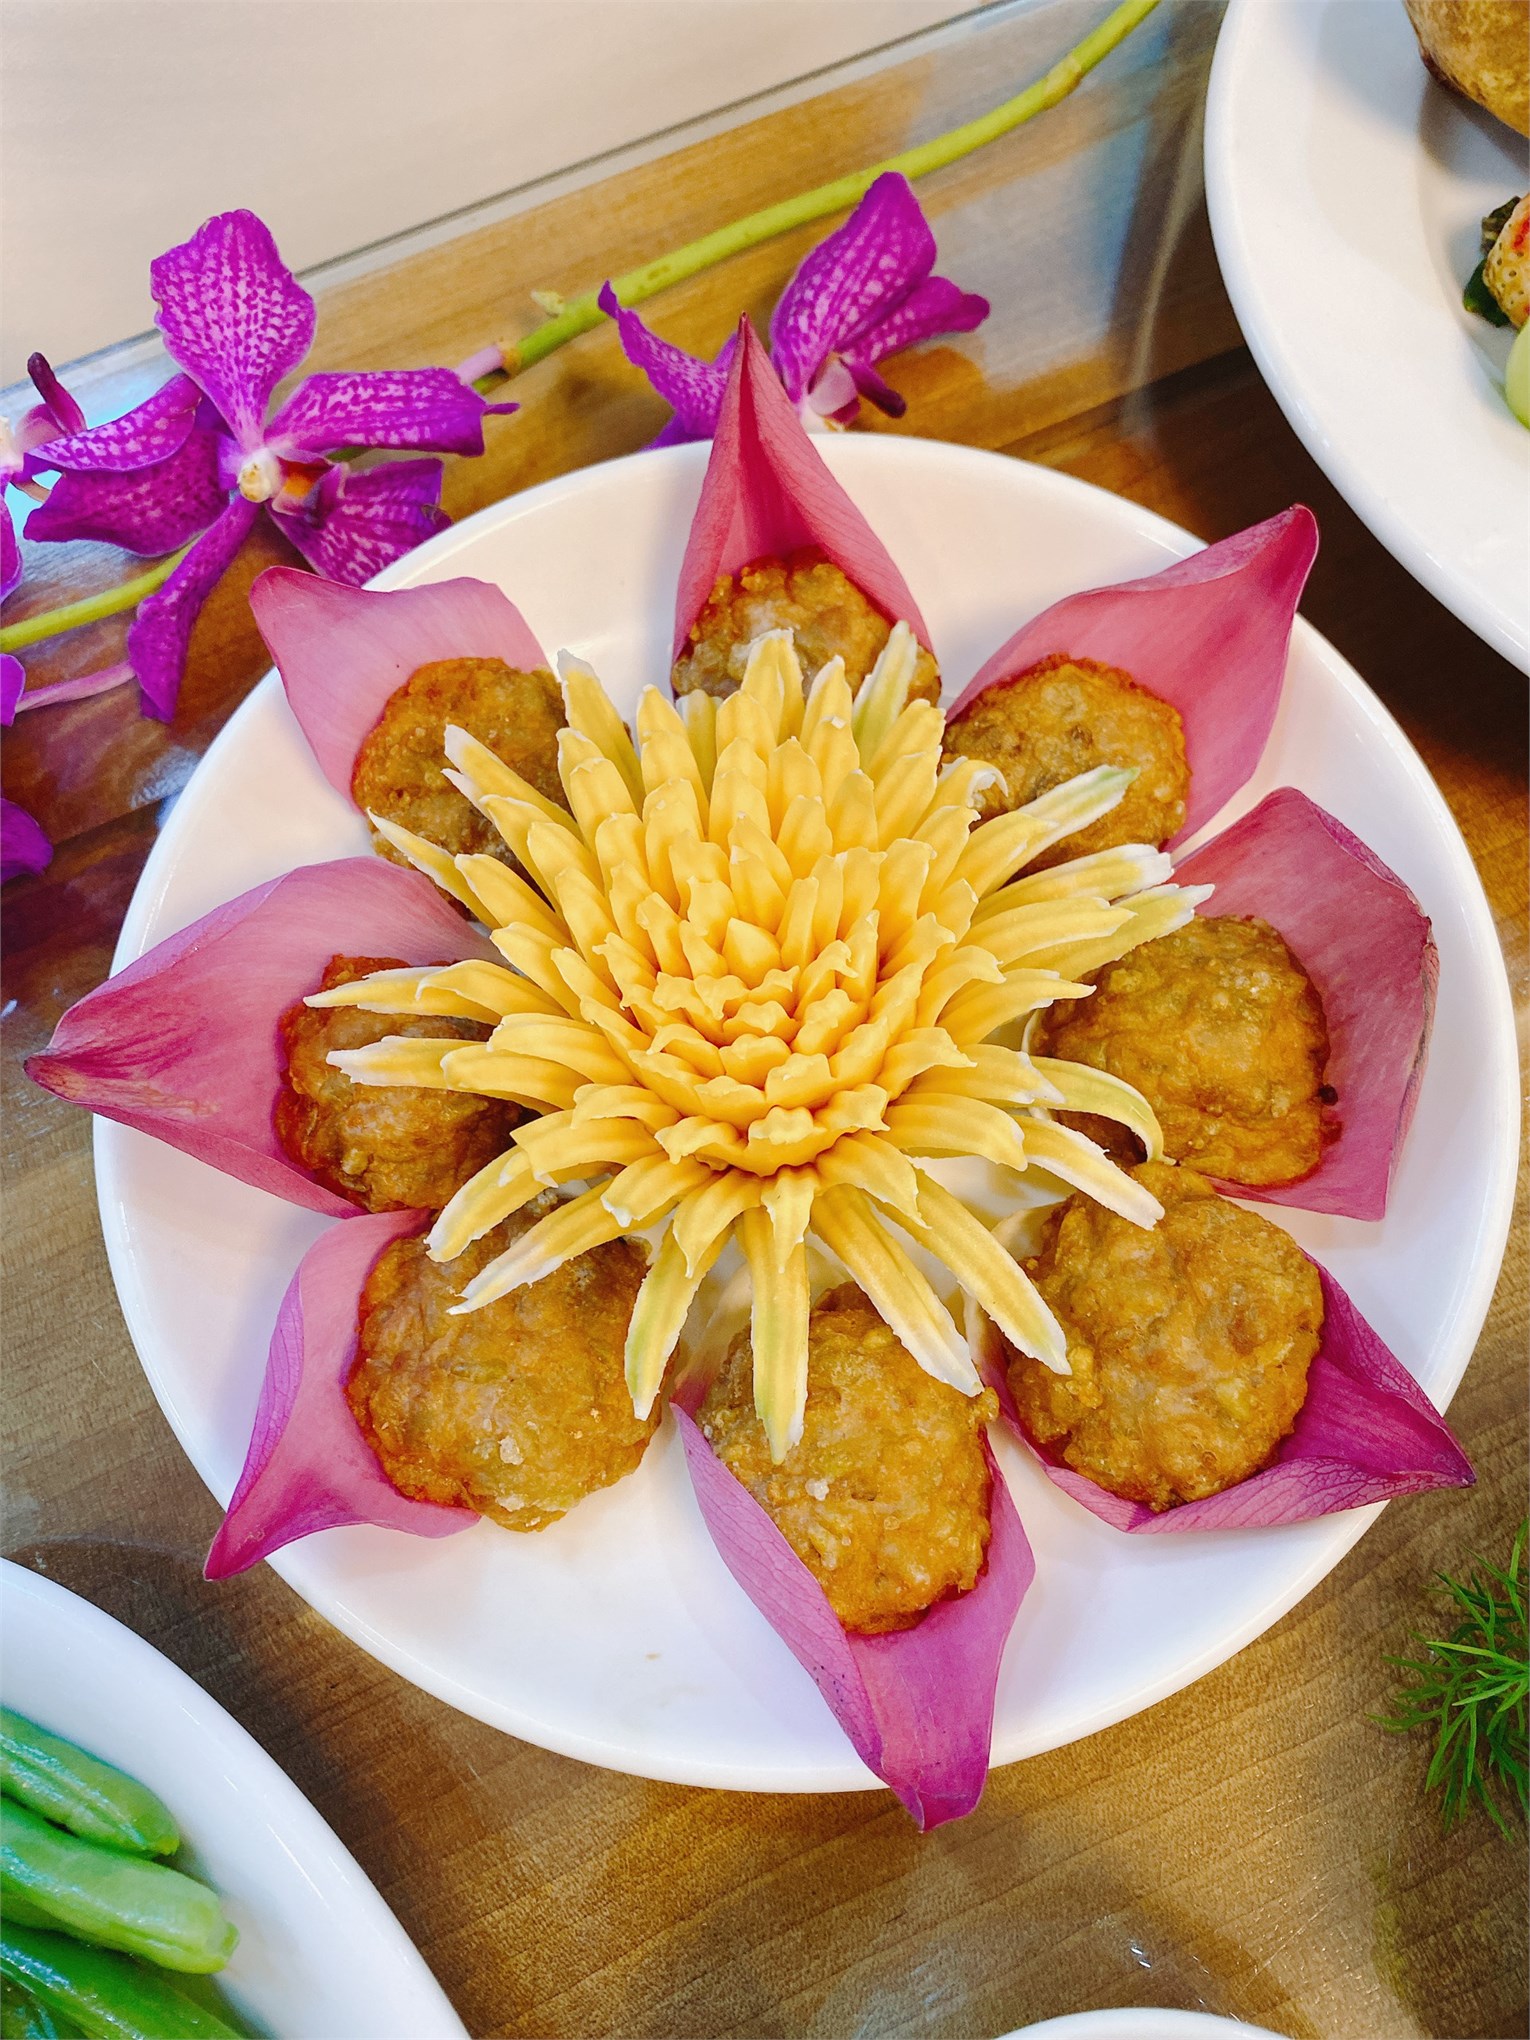 Hội thi nấu ăn cắm hoa kỉ niệm 90 năm ngày thành lập Hội Liên hiệp Phụ nữ Việt Nam